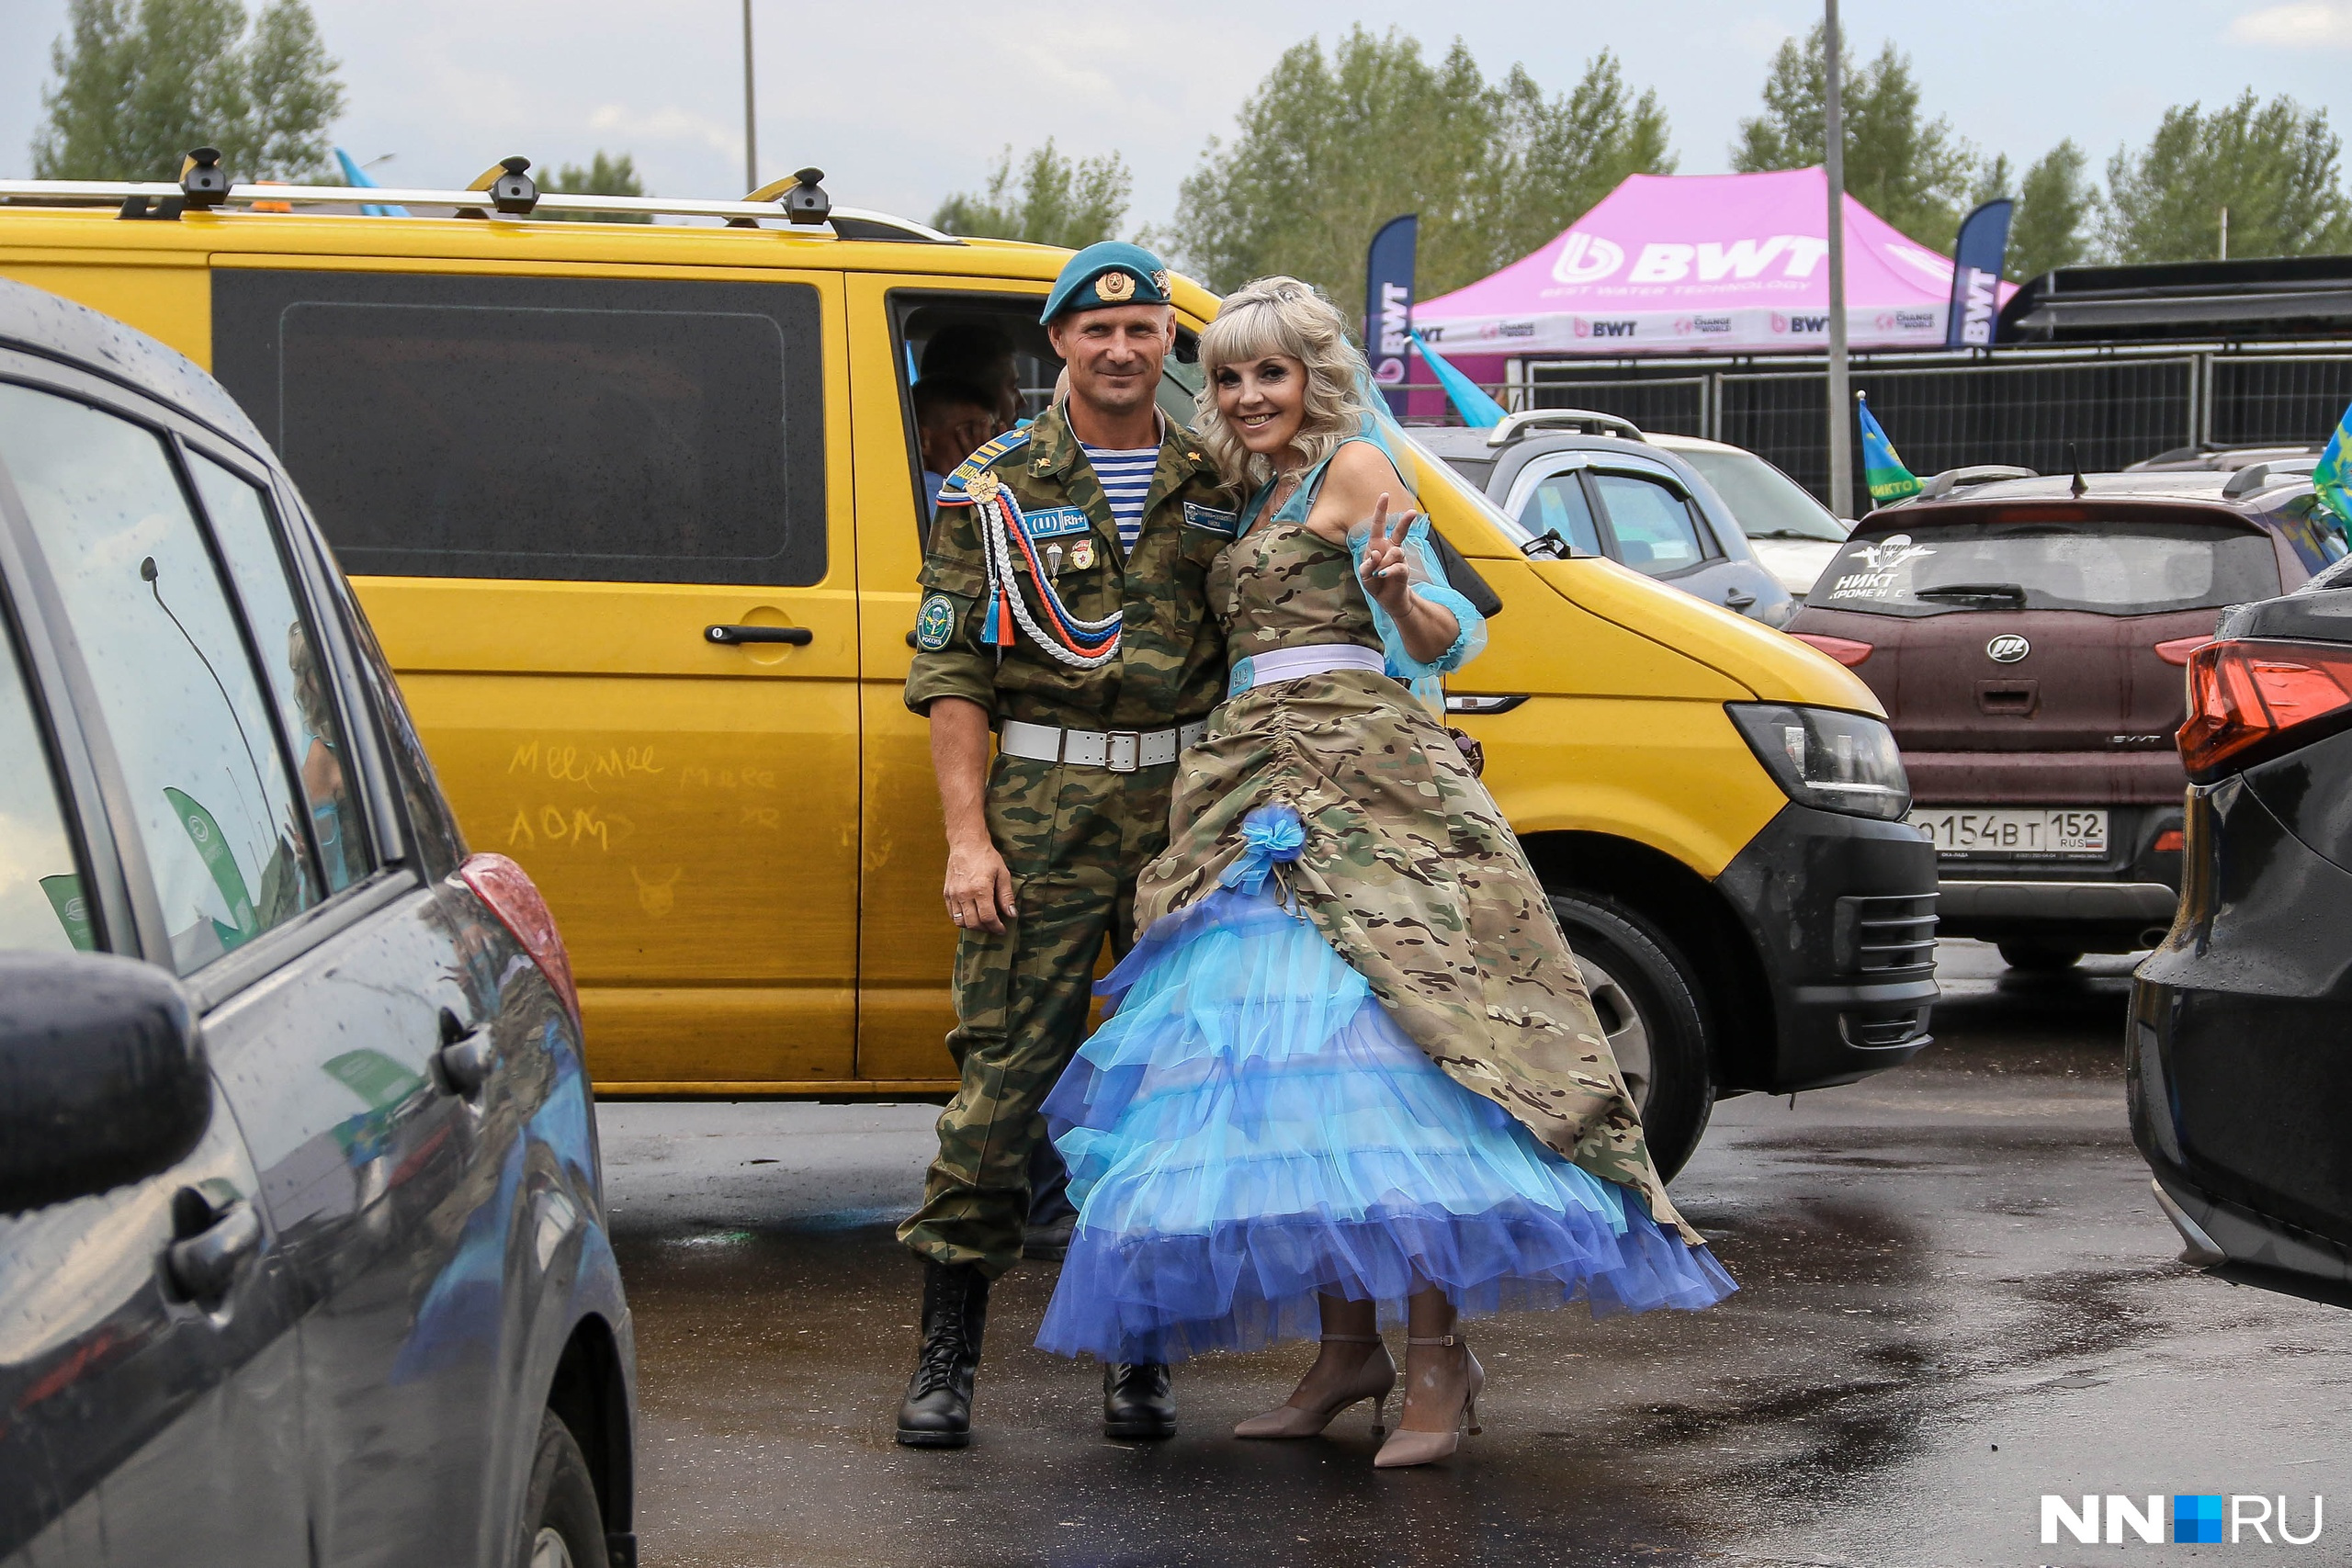 «Только с регистрации едем». Как прошёл день ВДВ в Нижнем Новгороде — эффектный фоторепортаж NN.RU